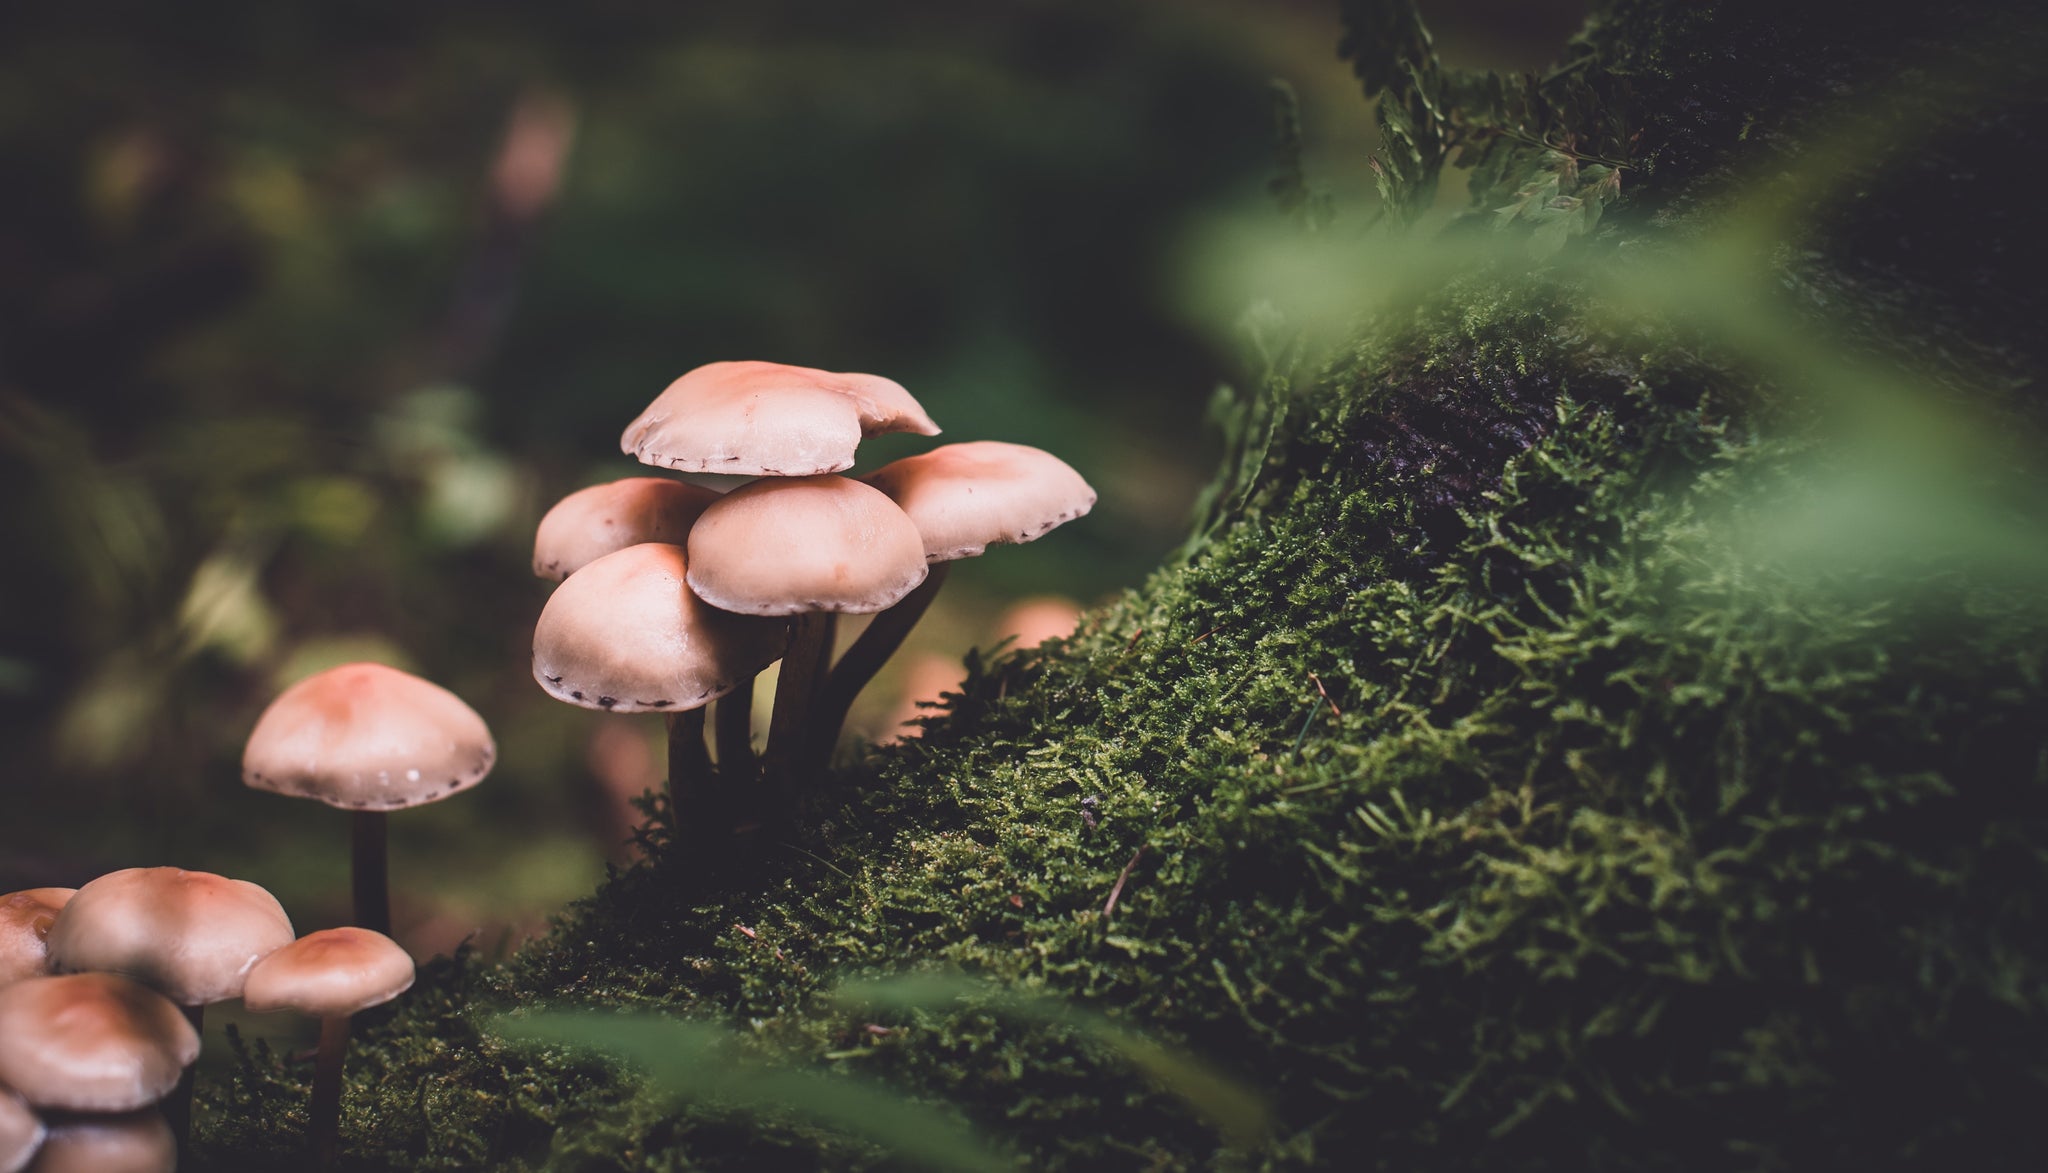 The Magic Of Mushrooms